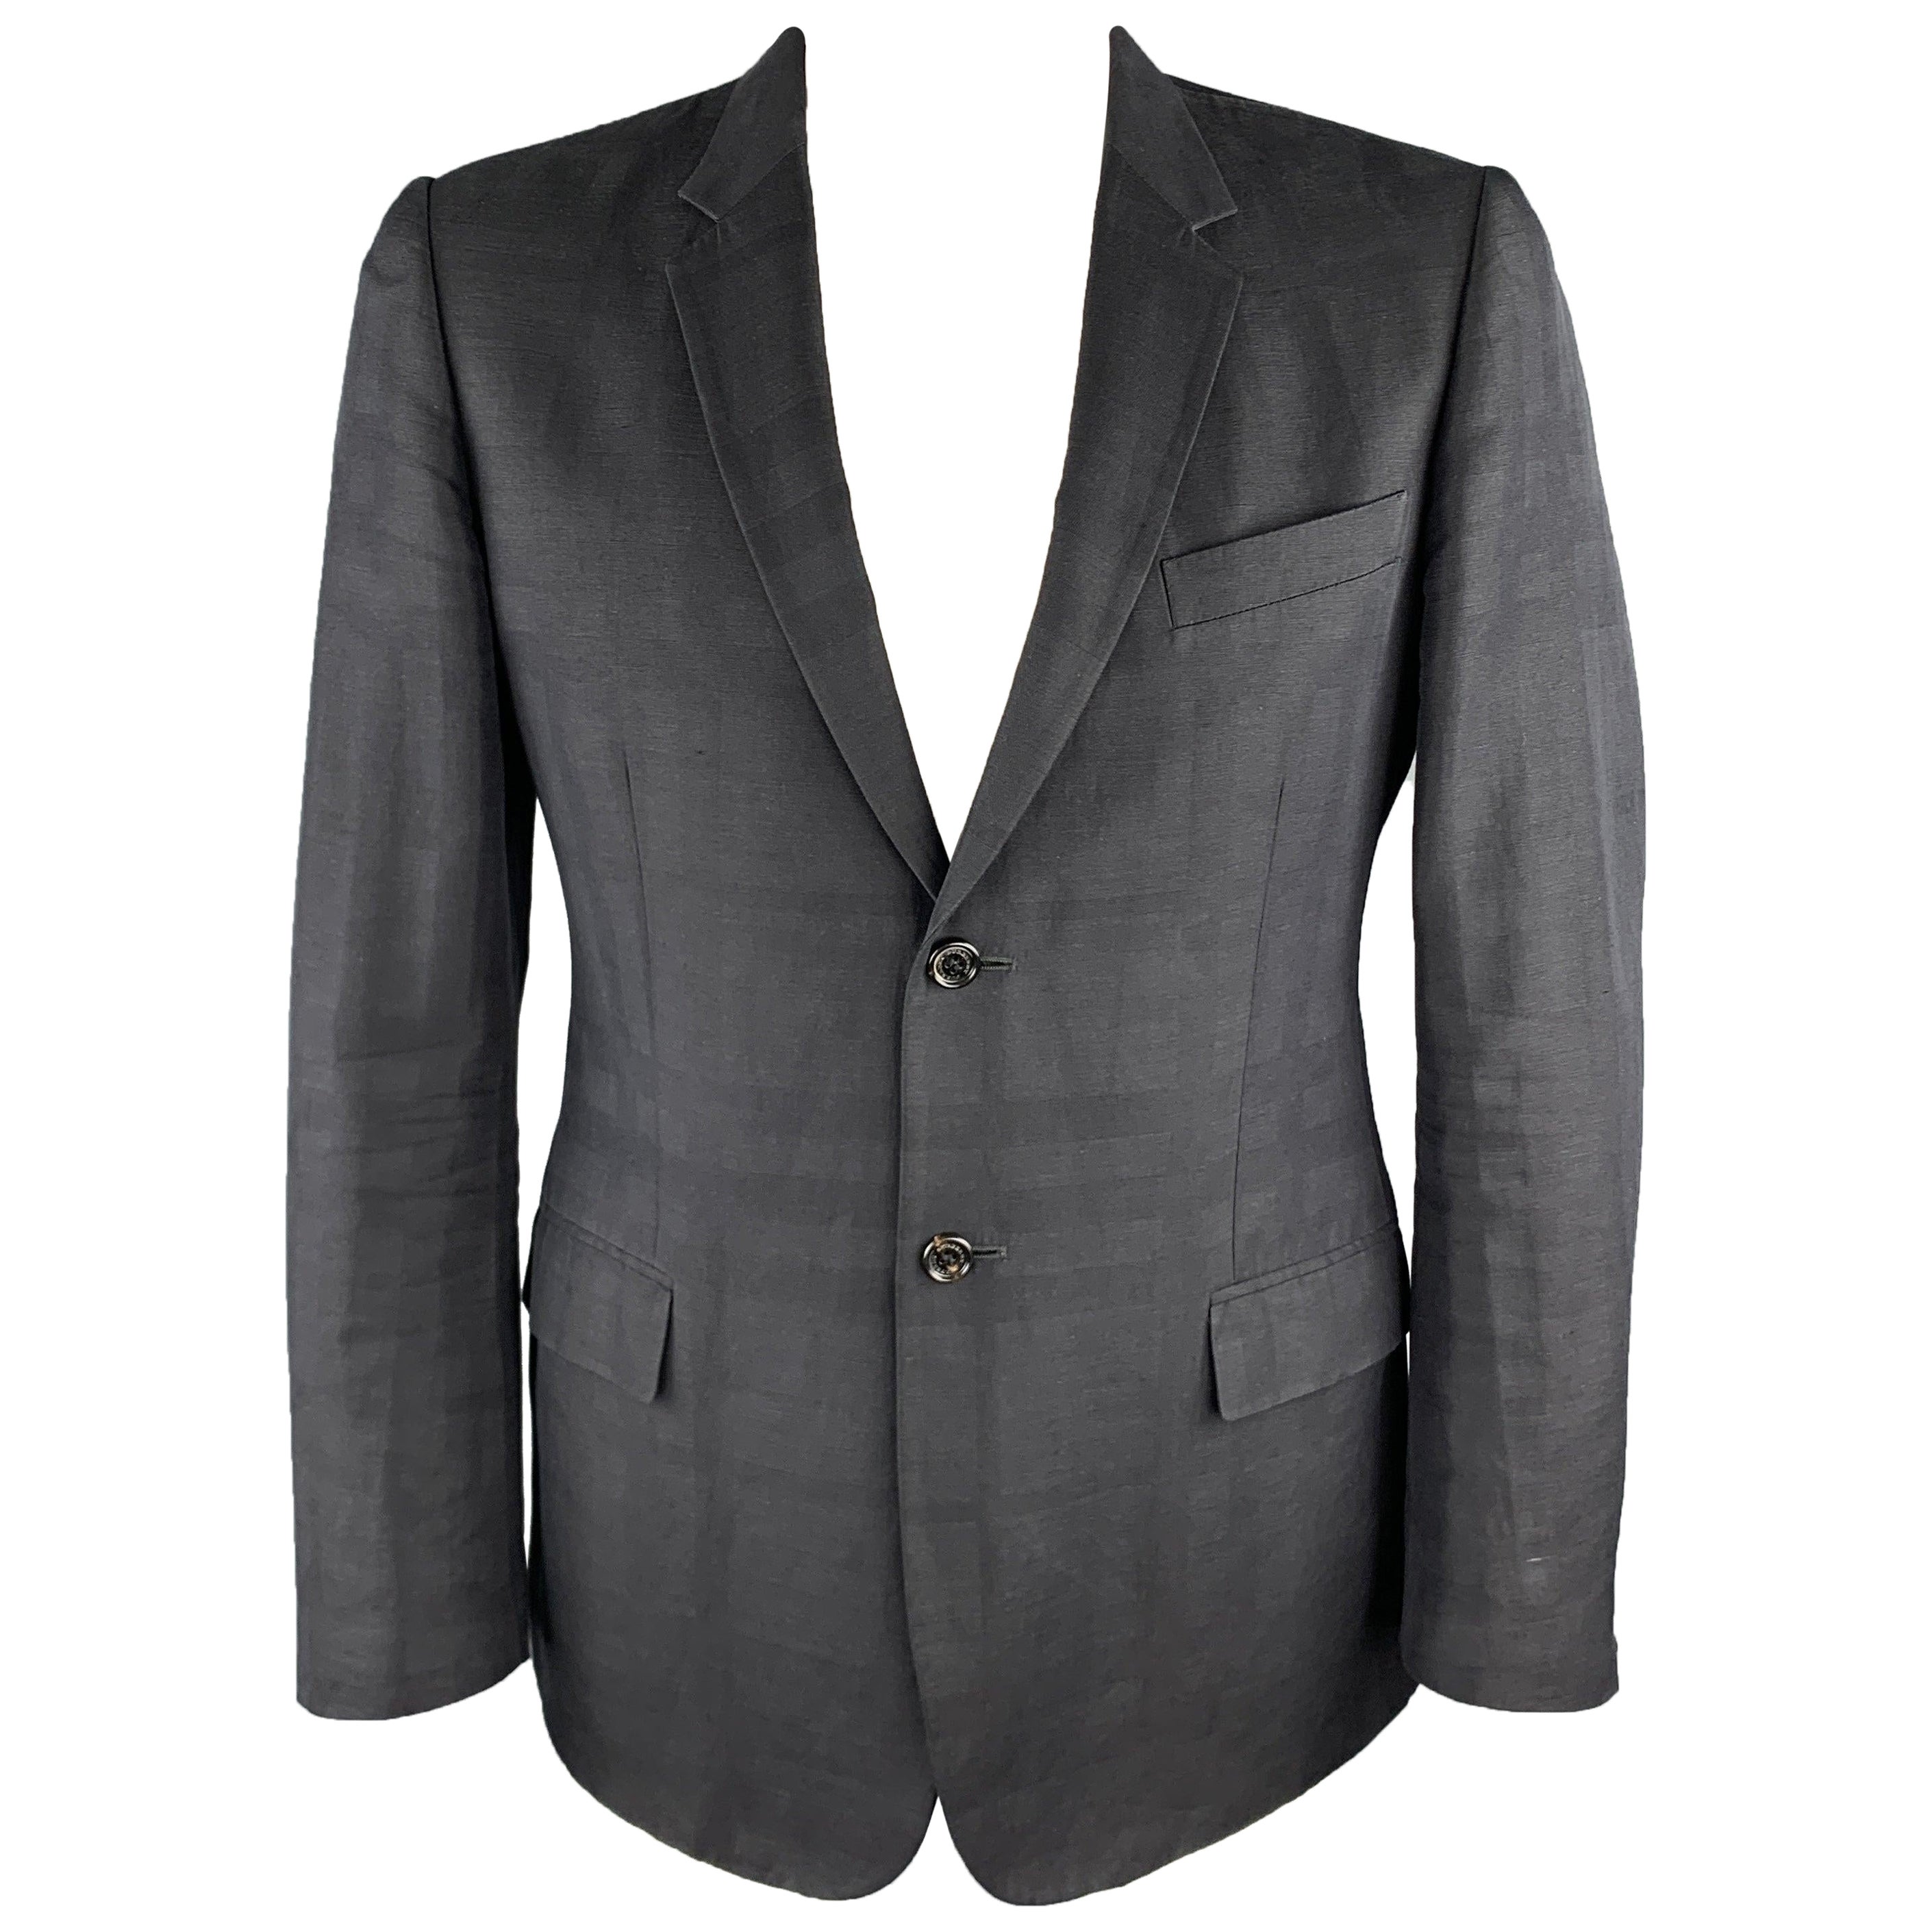 BURBERRY LONDON Size 44 Black Plaid Cotton Blend Notch Lapel Sport Coat For Sale